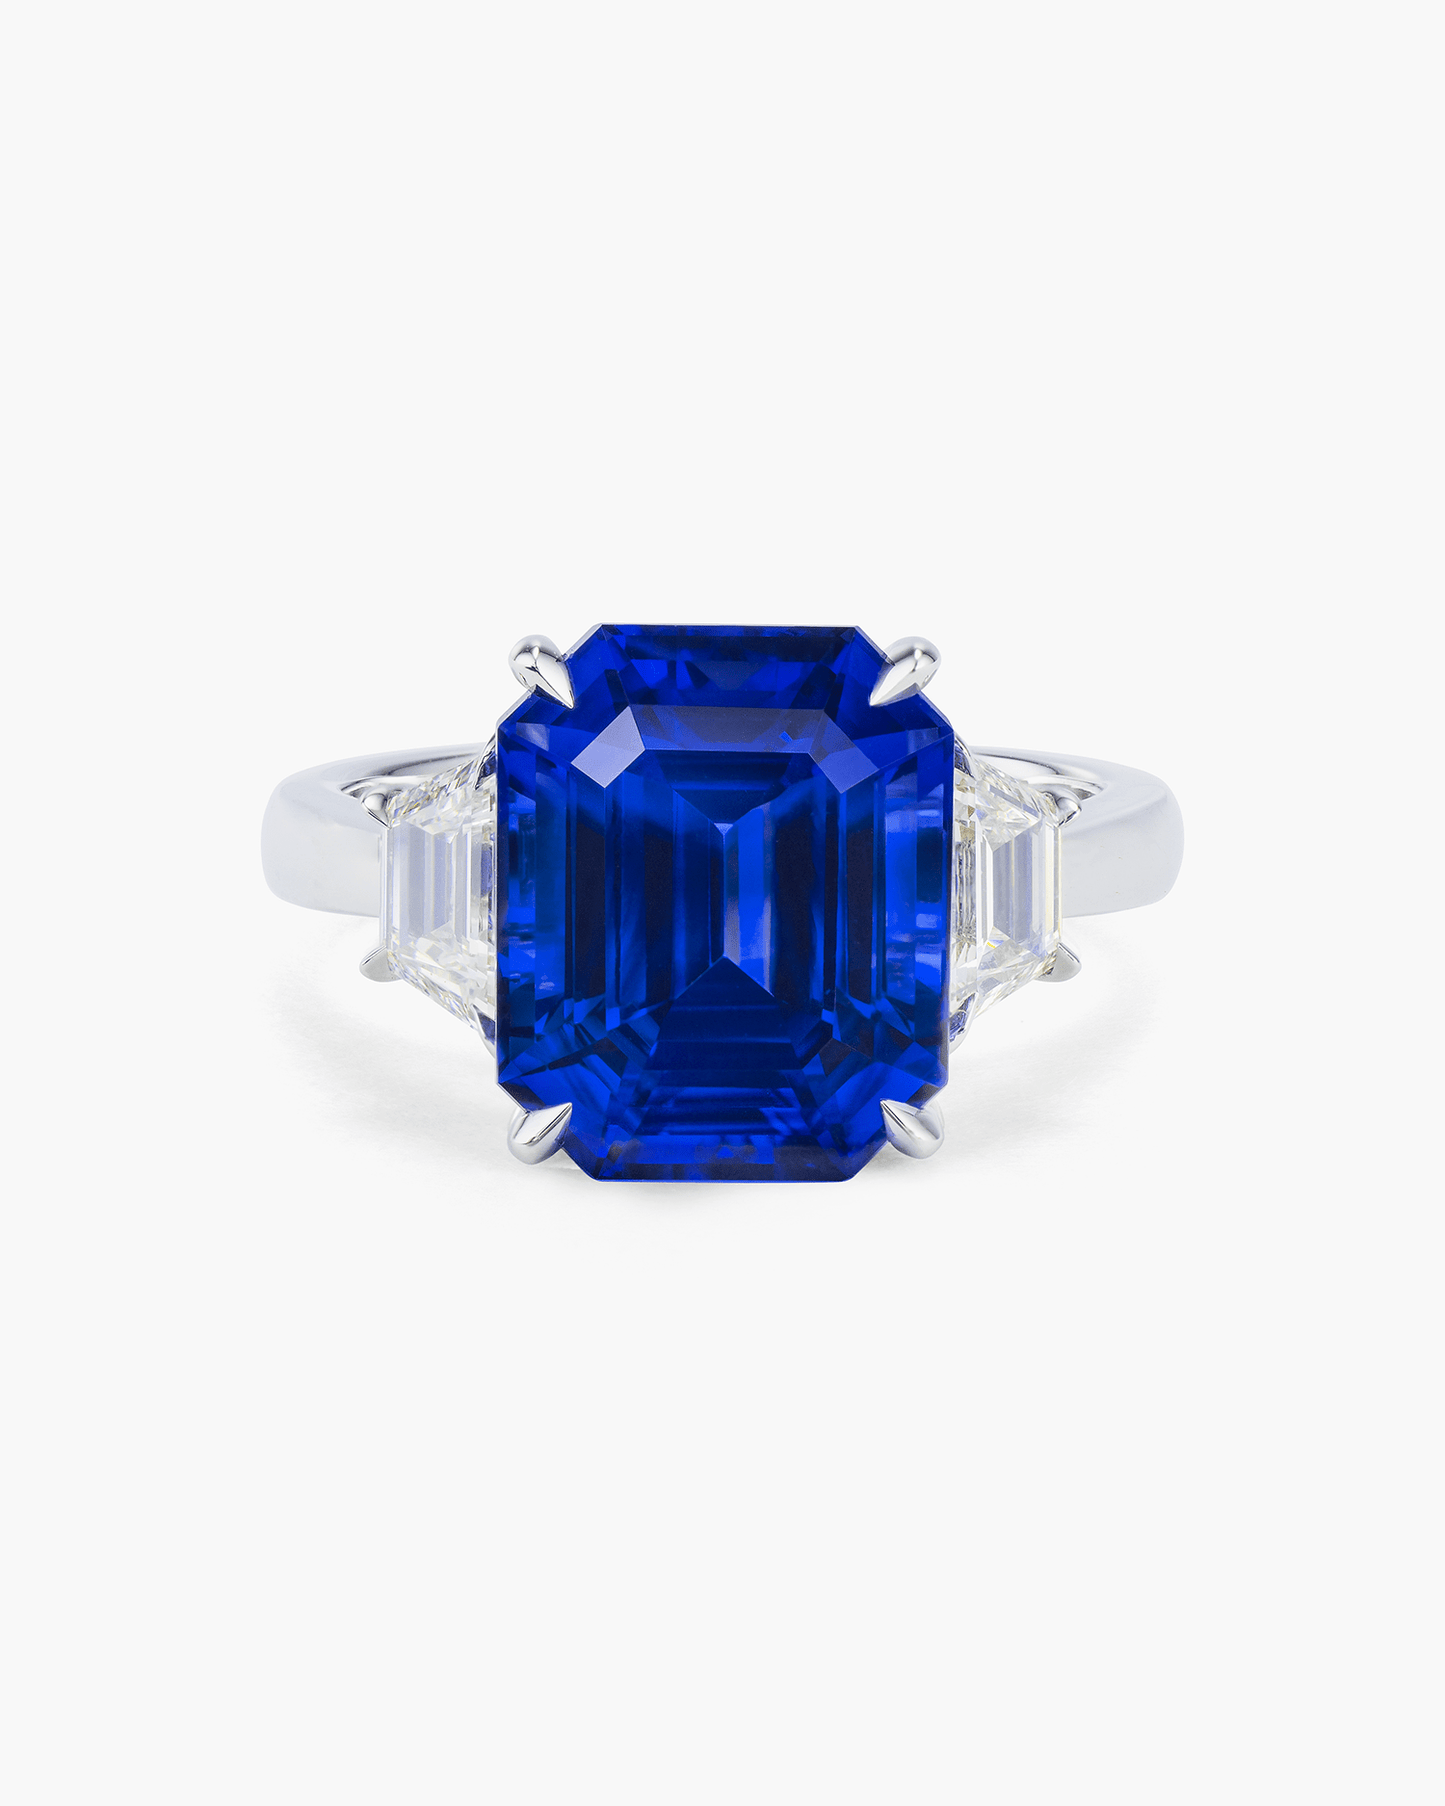 7.25 carat Emerald Cut Ceylon Sapphire and Diamond Ring